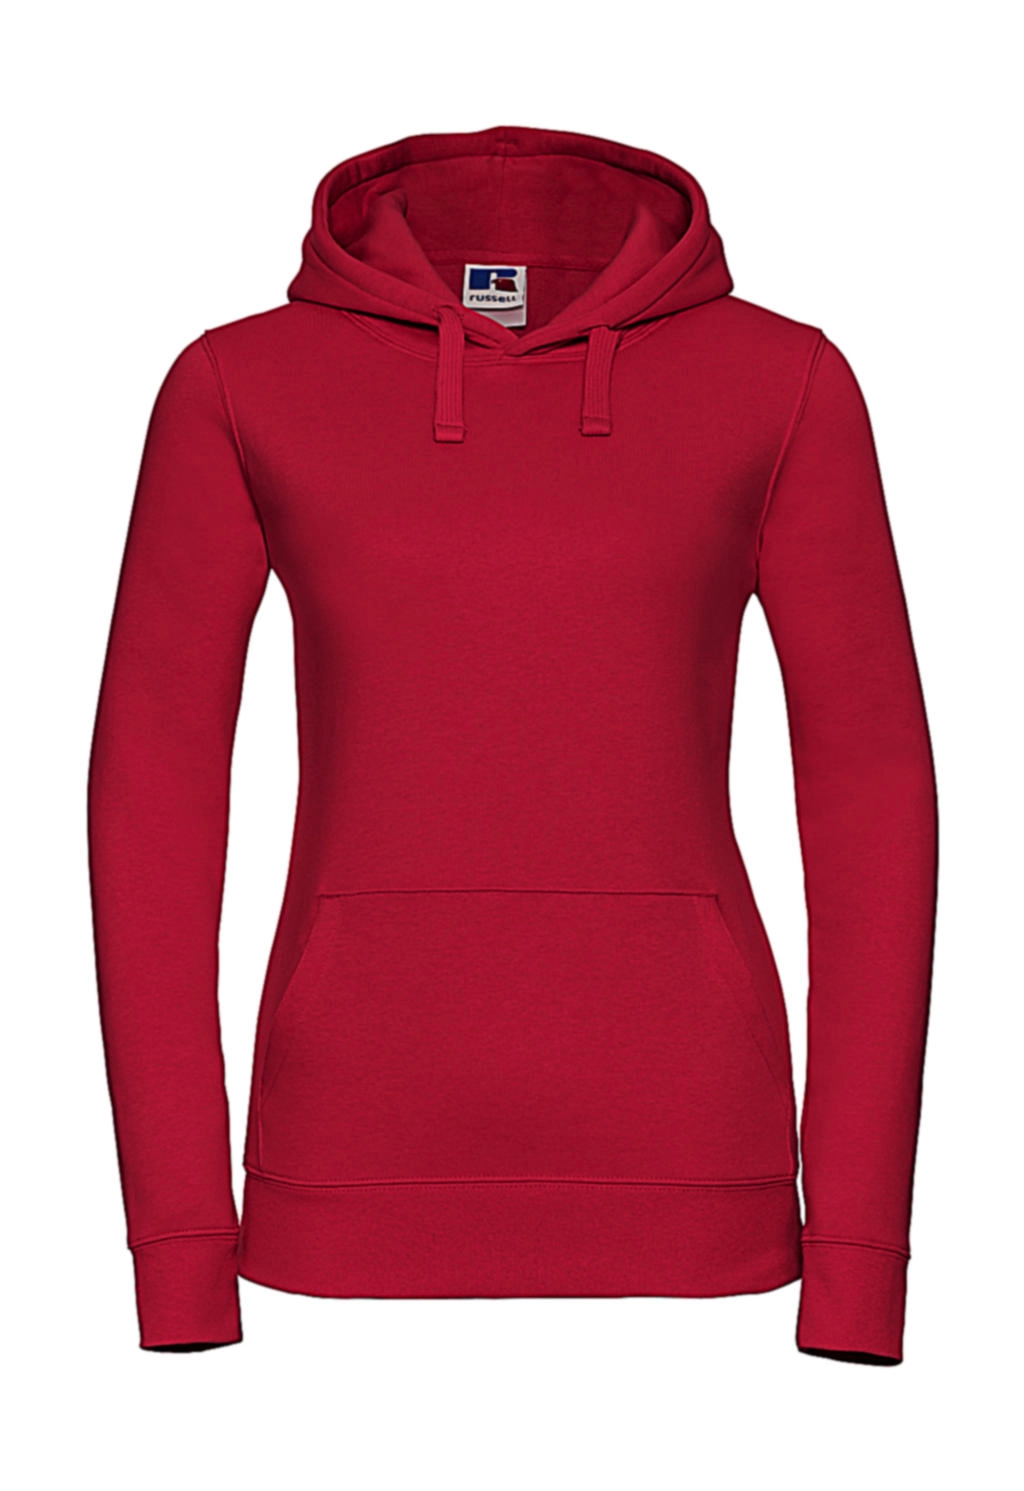 Ladies` Authentic Hooded Sweat zum Besticken und Bedrucken in der Farbe Classic Red mit Ihren Logo, Schriftzug oder Motiv.